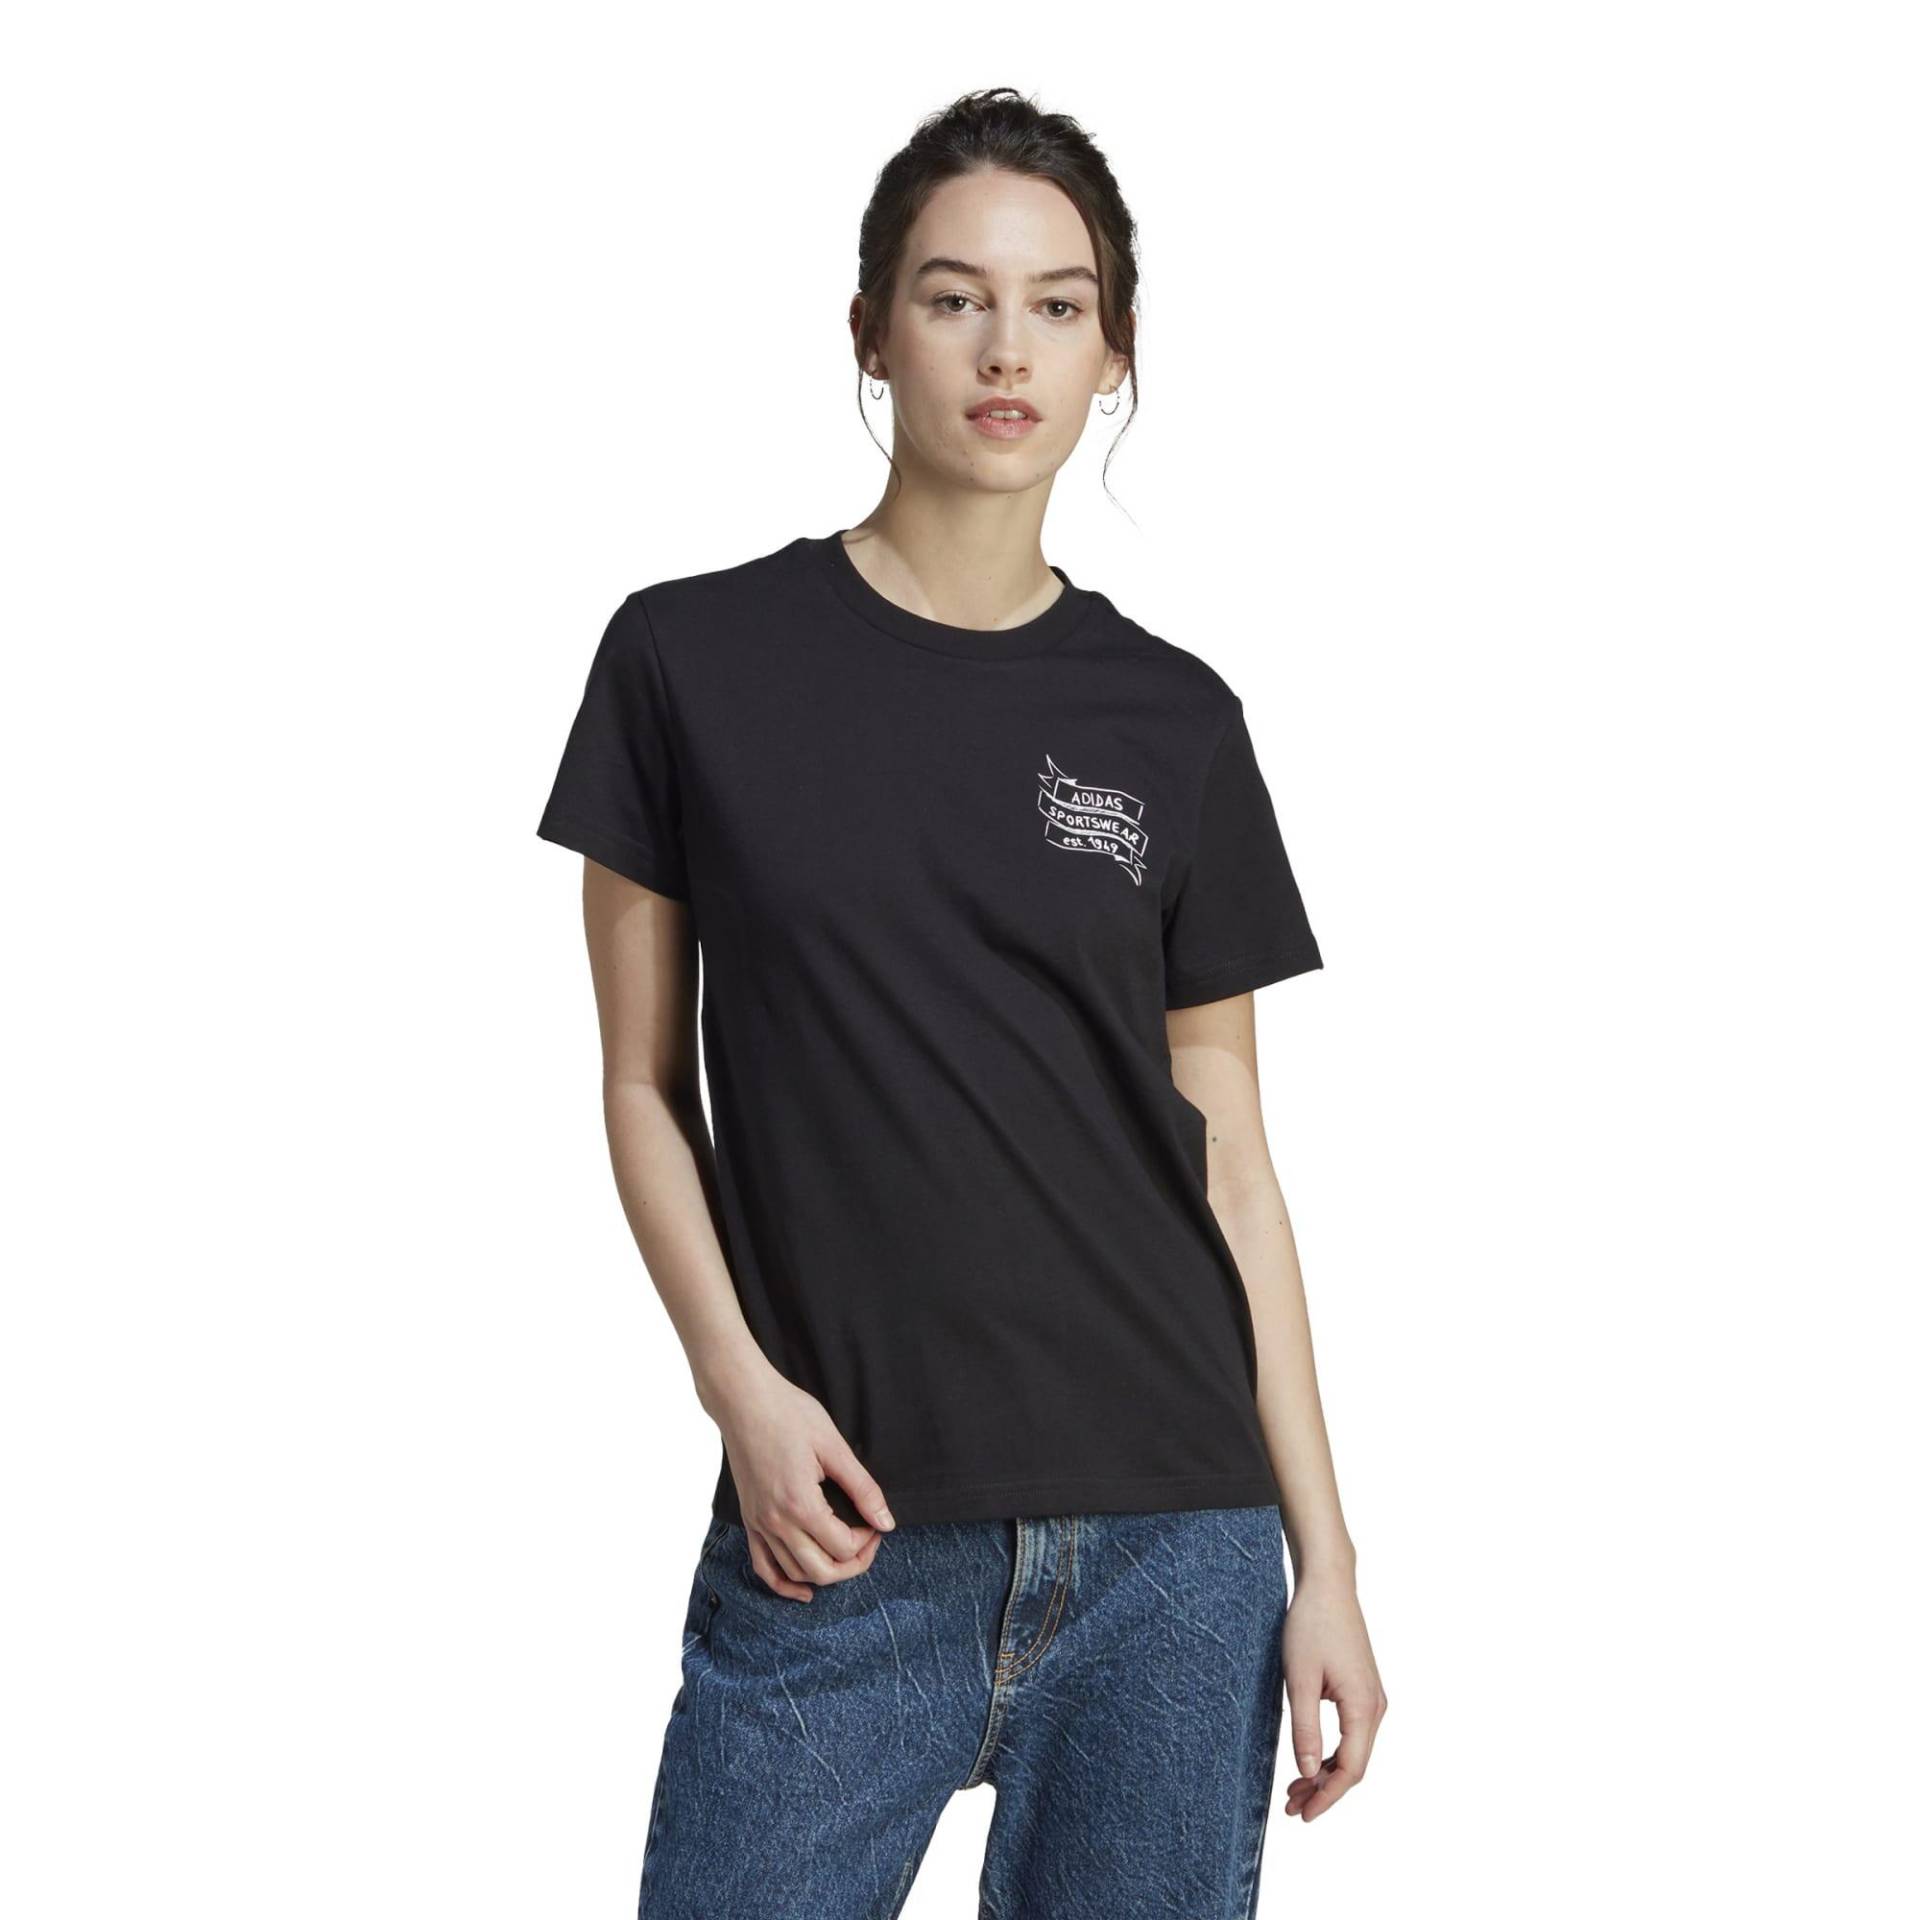 Adidas T-Shirt Damen - Brand Love schwarz von Adidas